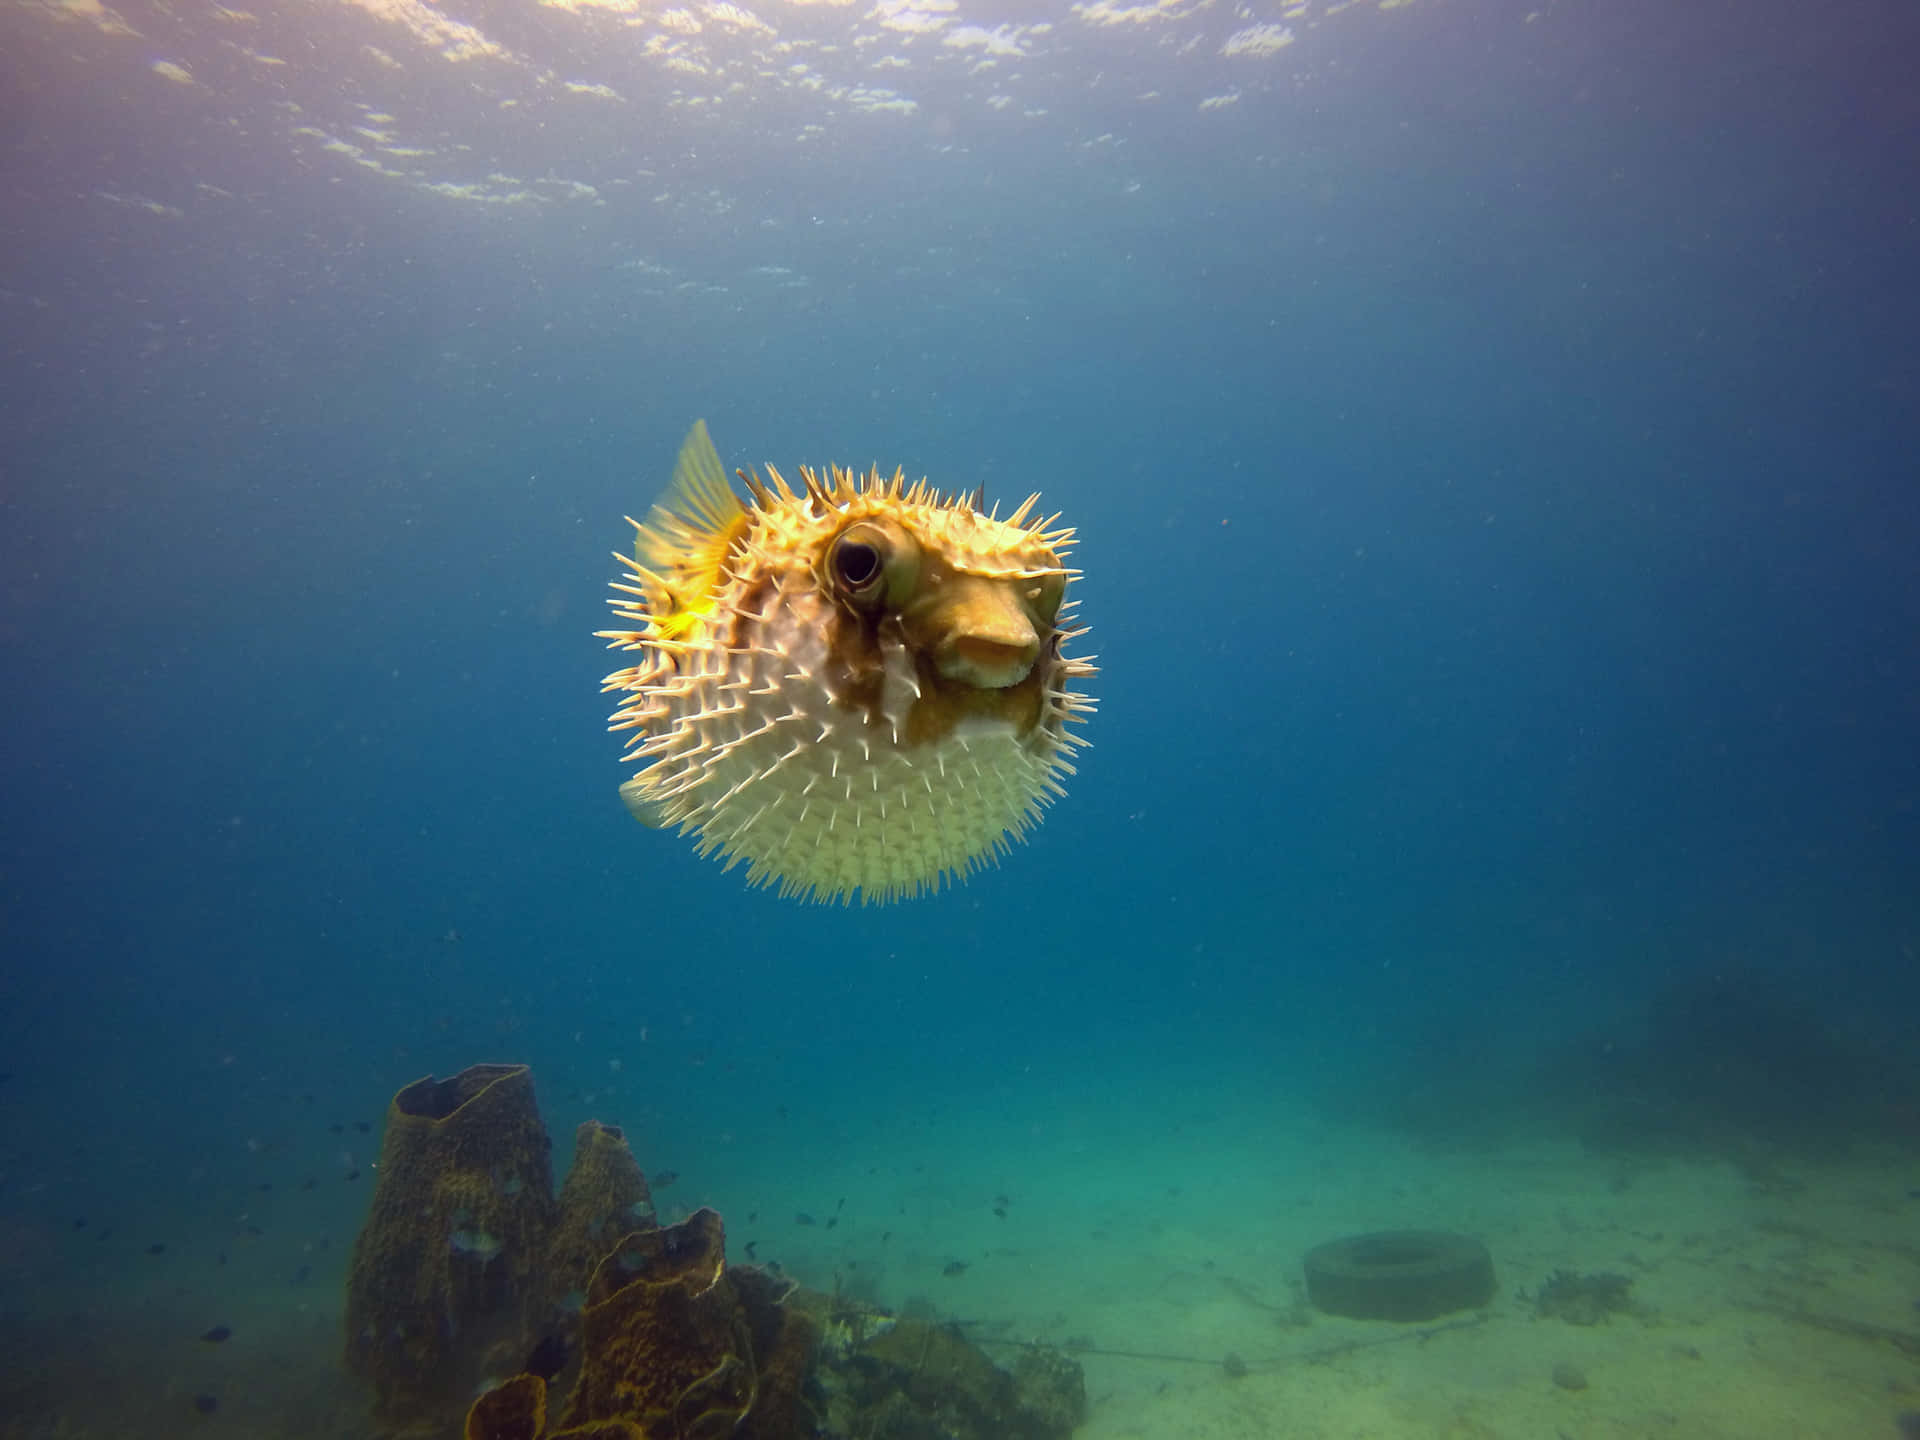 Inflated Pufferfish Underwater Wallpaper